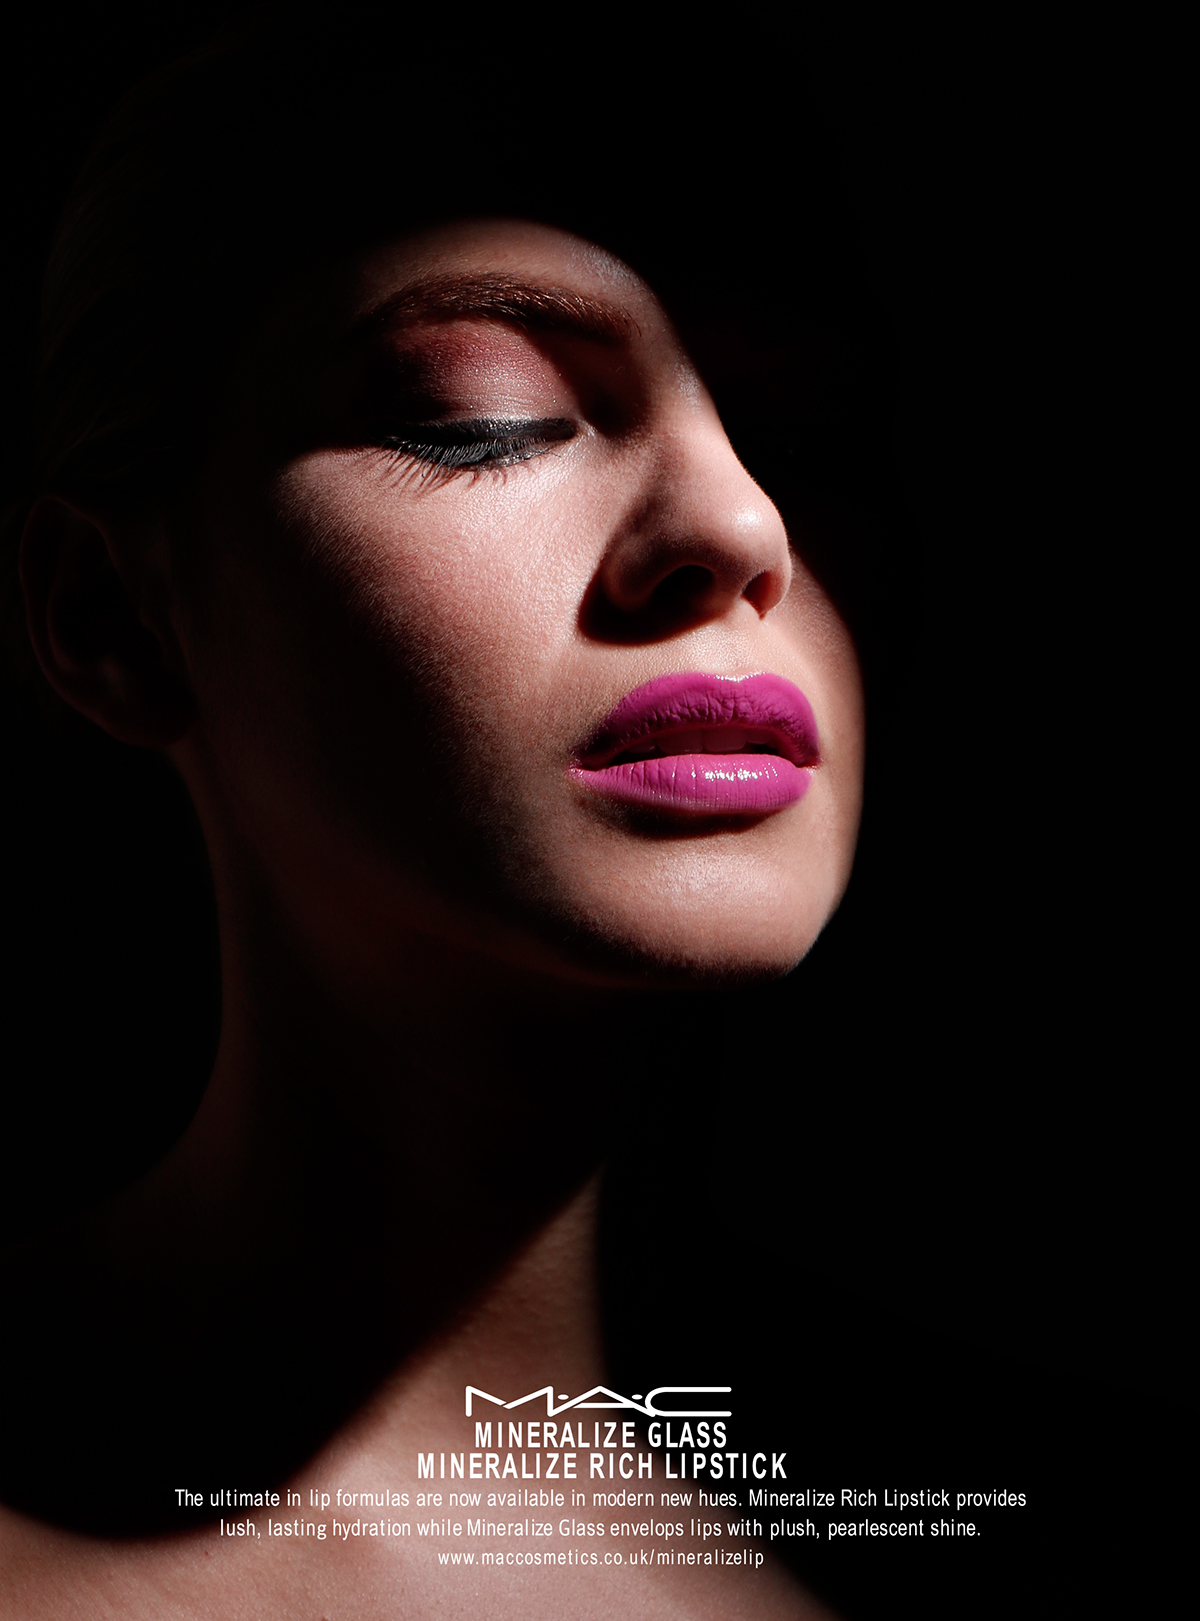 mac nars advertisement magazine beauty cosmetics